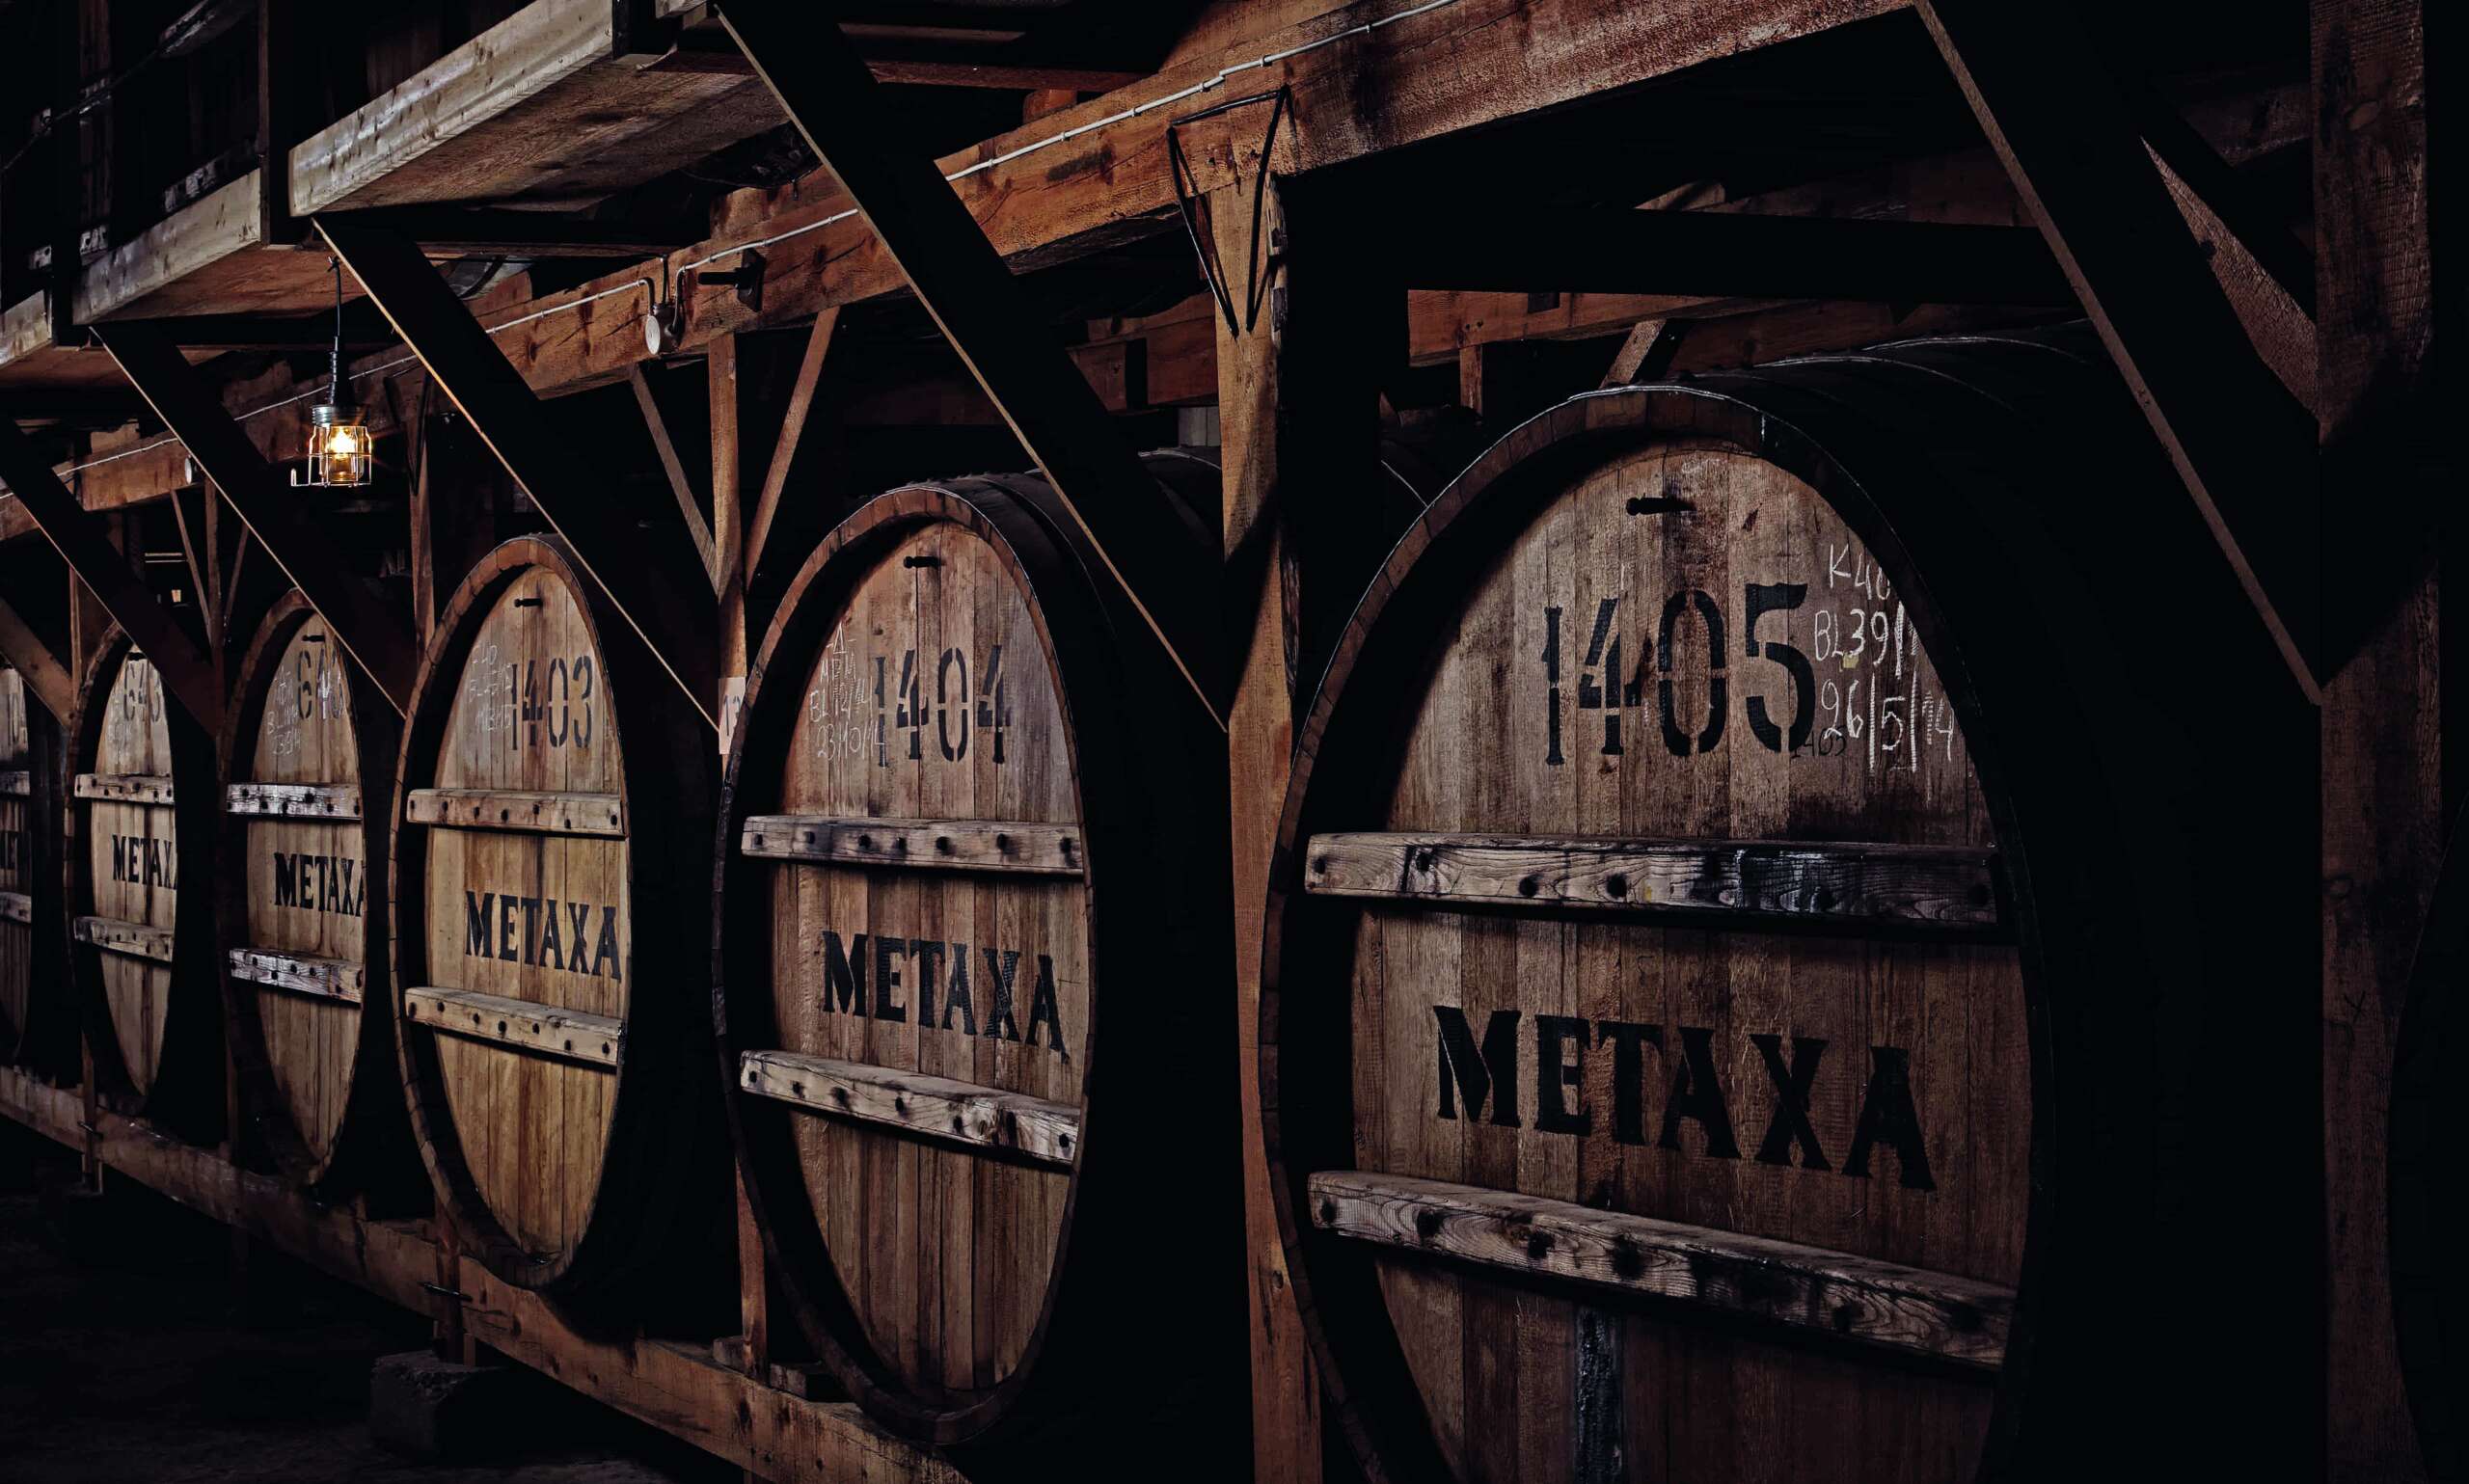 Barrels of Metaxa 